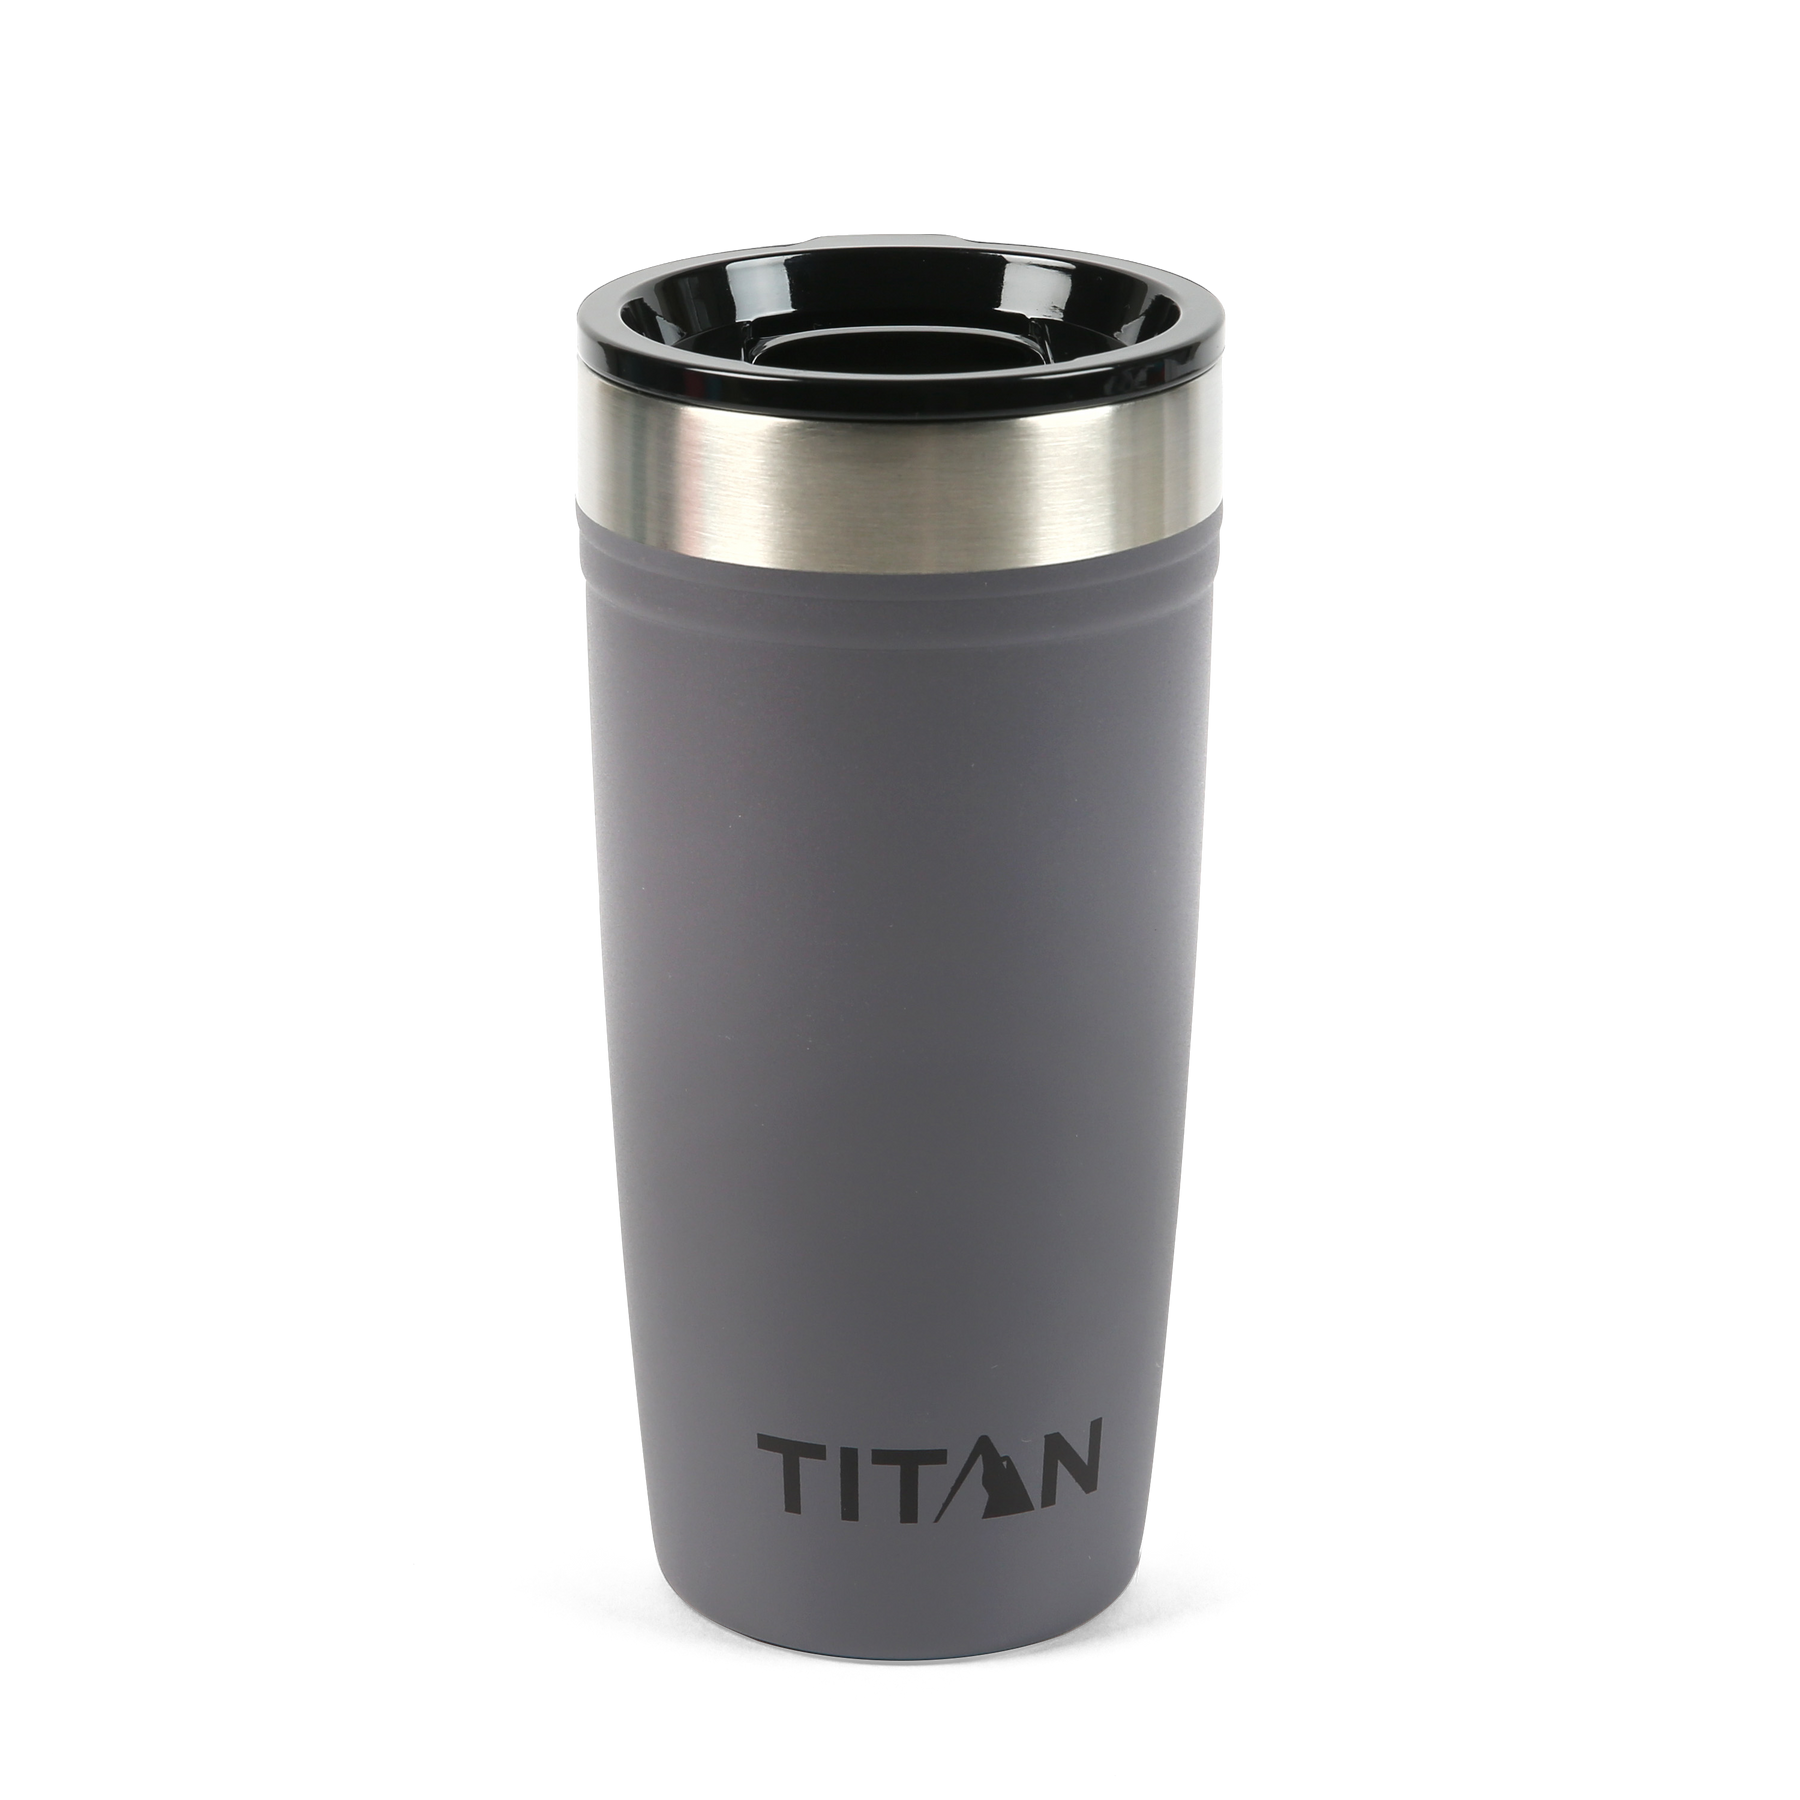 Imprinted Arctic Zone Titan Thermal HP Mugs (20 Oz.), Travel Mugs